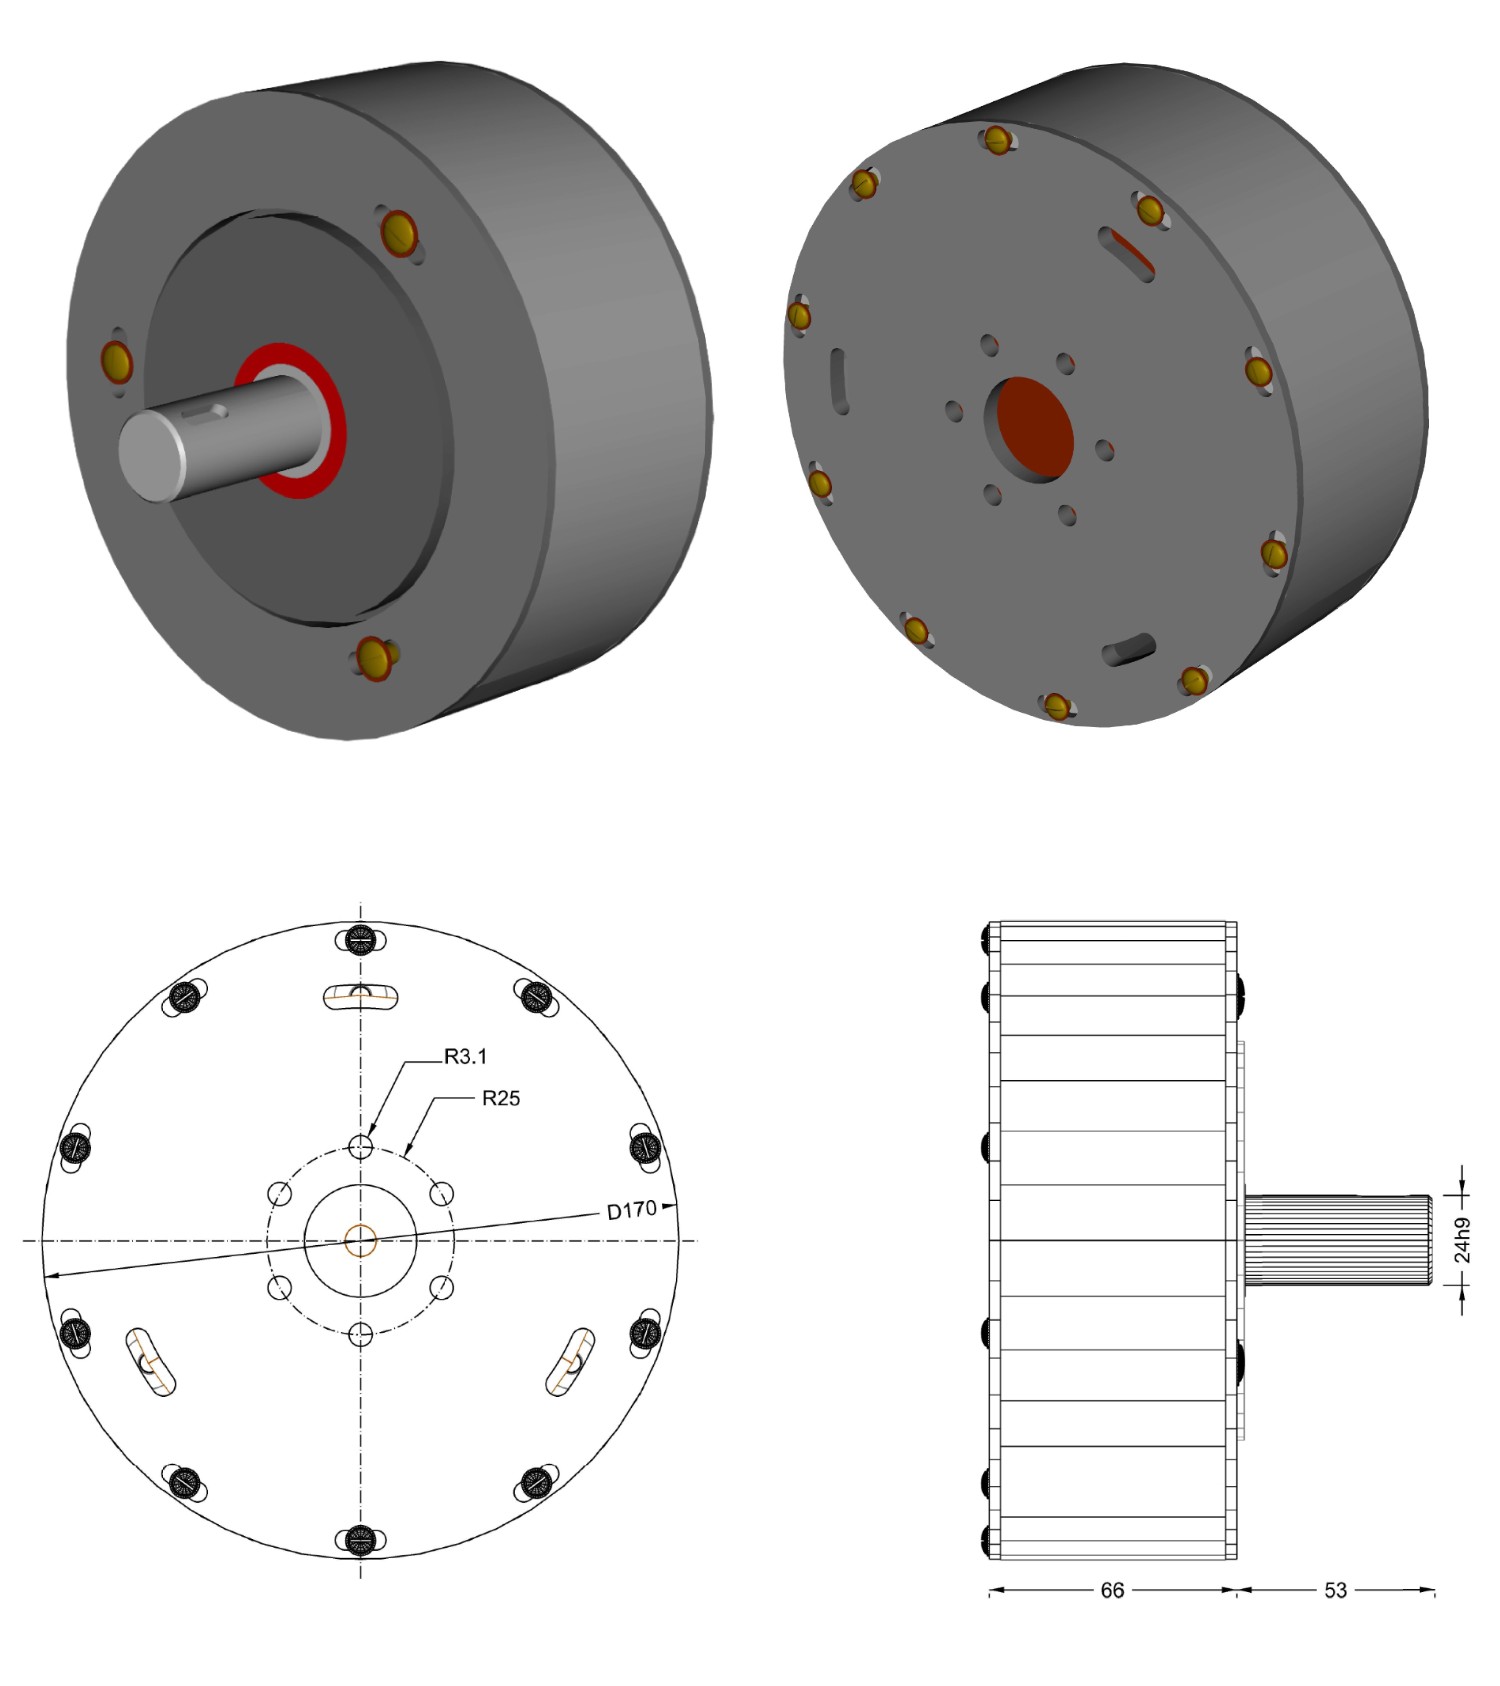 Opracowanie magnetycznego systemu dwustanowego typu MSD/180NCM/24H9 przewidzianego do pracy w układzie nawijającym.